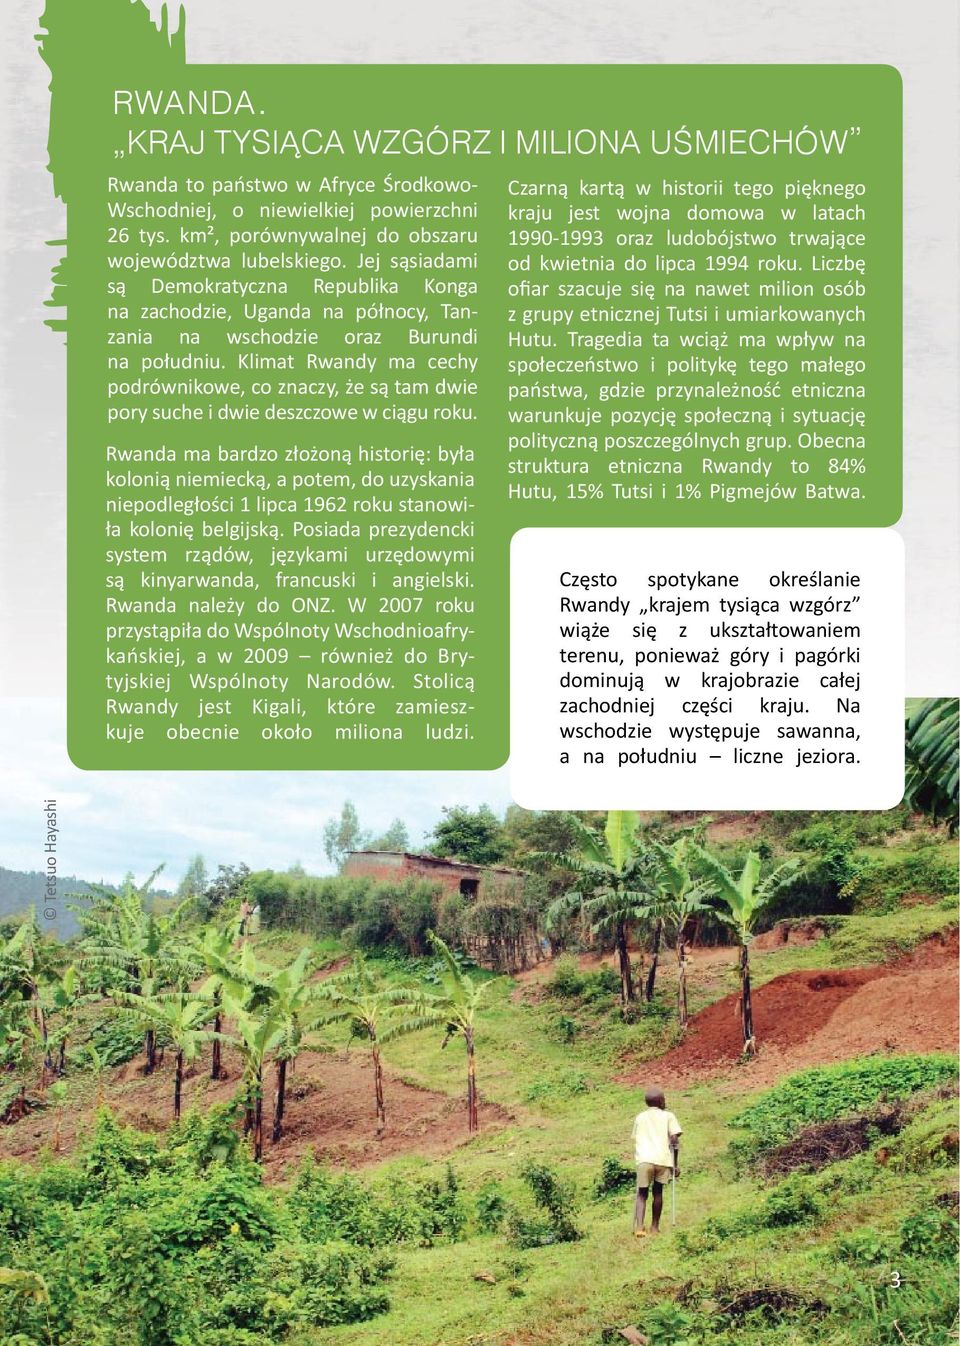 Klimat Rwandy ma cechy podrównikowe, co znaczy, że są tam dwie pory suche i dwie deszczowe w ciągu roku.